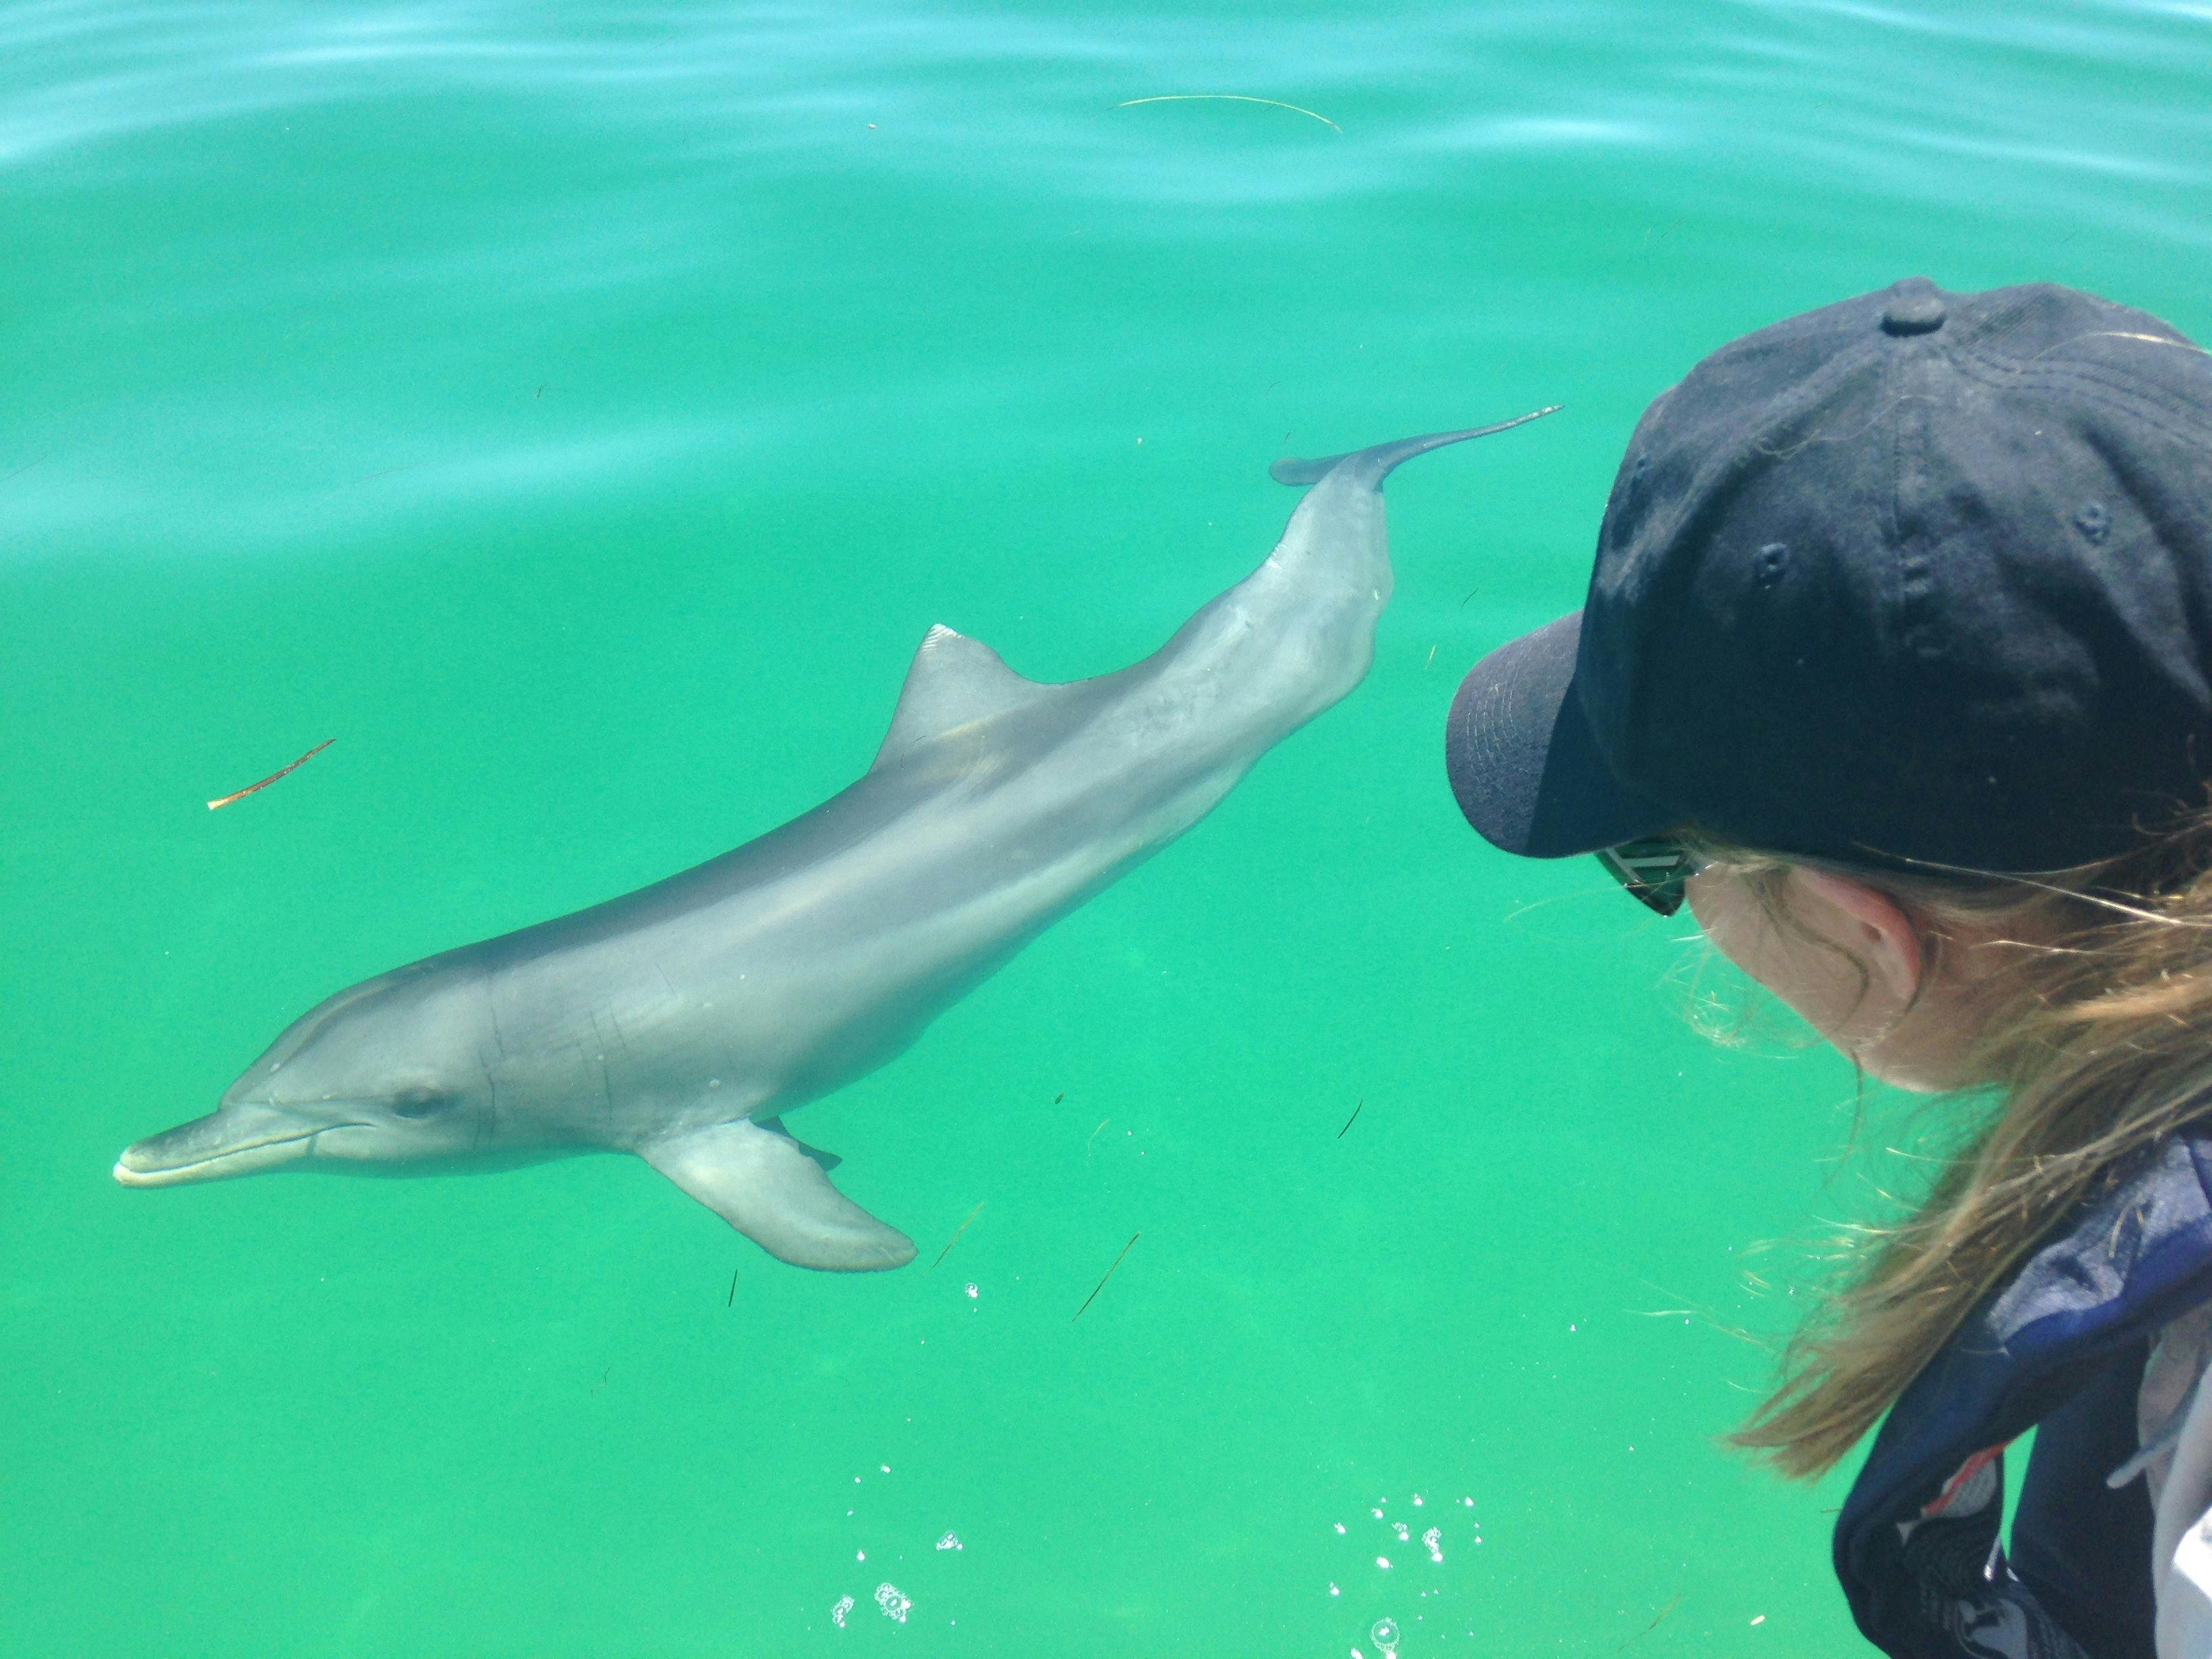 Adelaide Dolphin Sanctuary